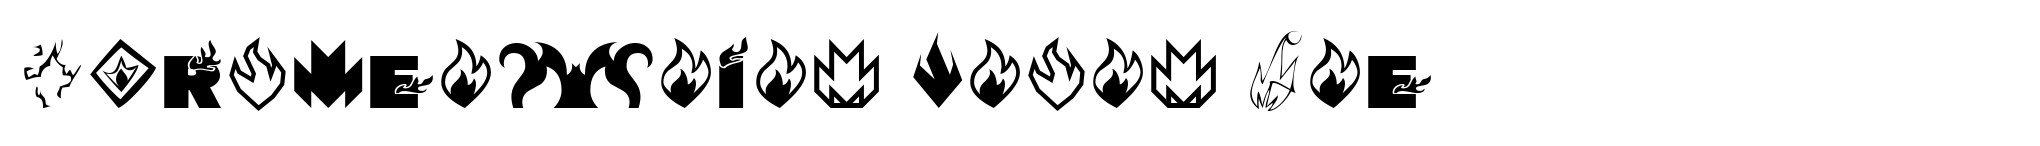 Pyrotechnics Icons One image